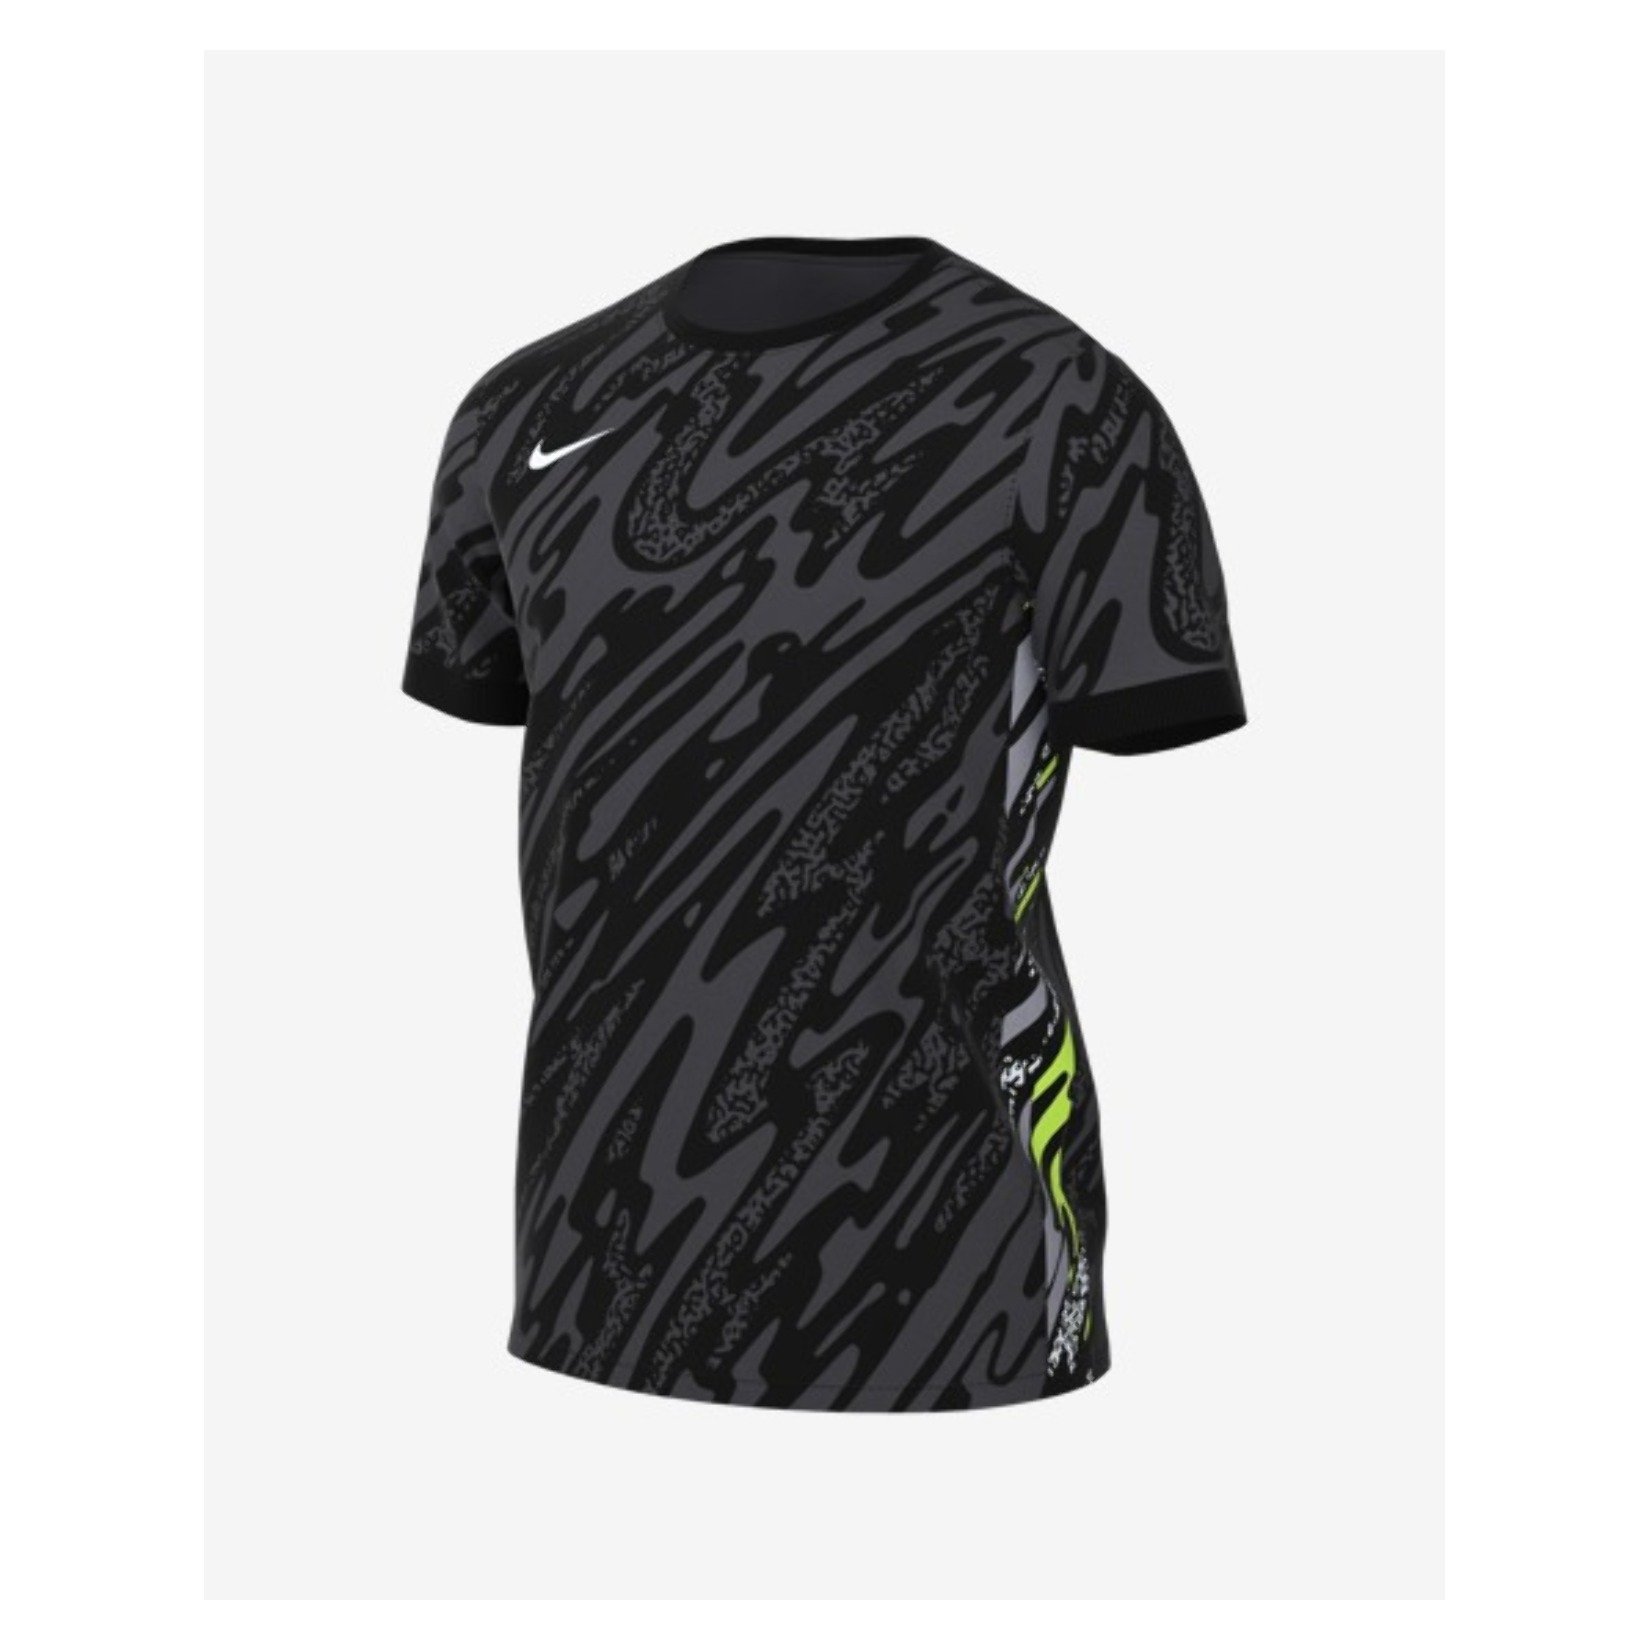 Nike Dri-Fit Gardien V Goalkeeper Jersey SS